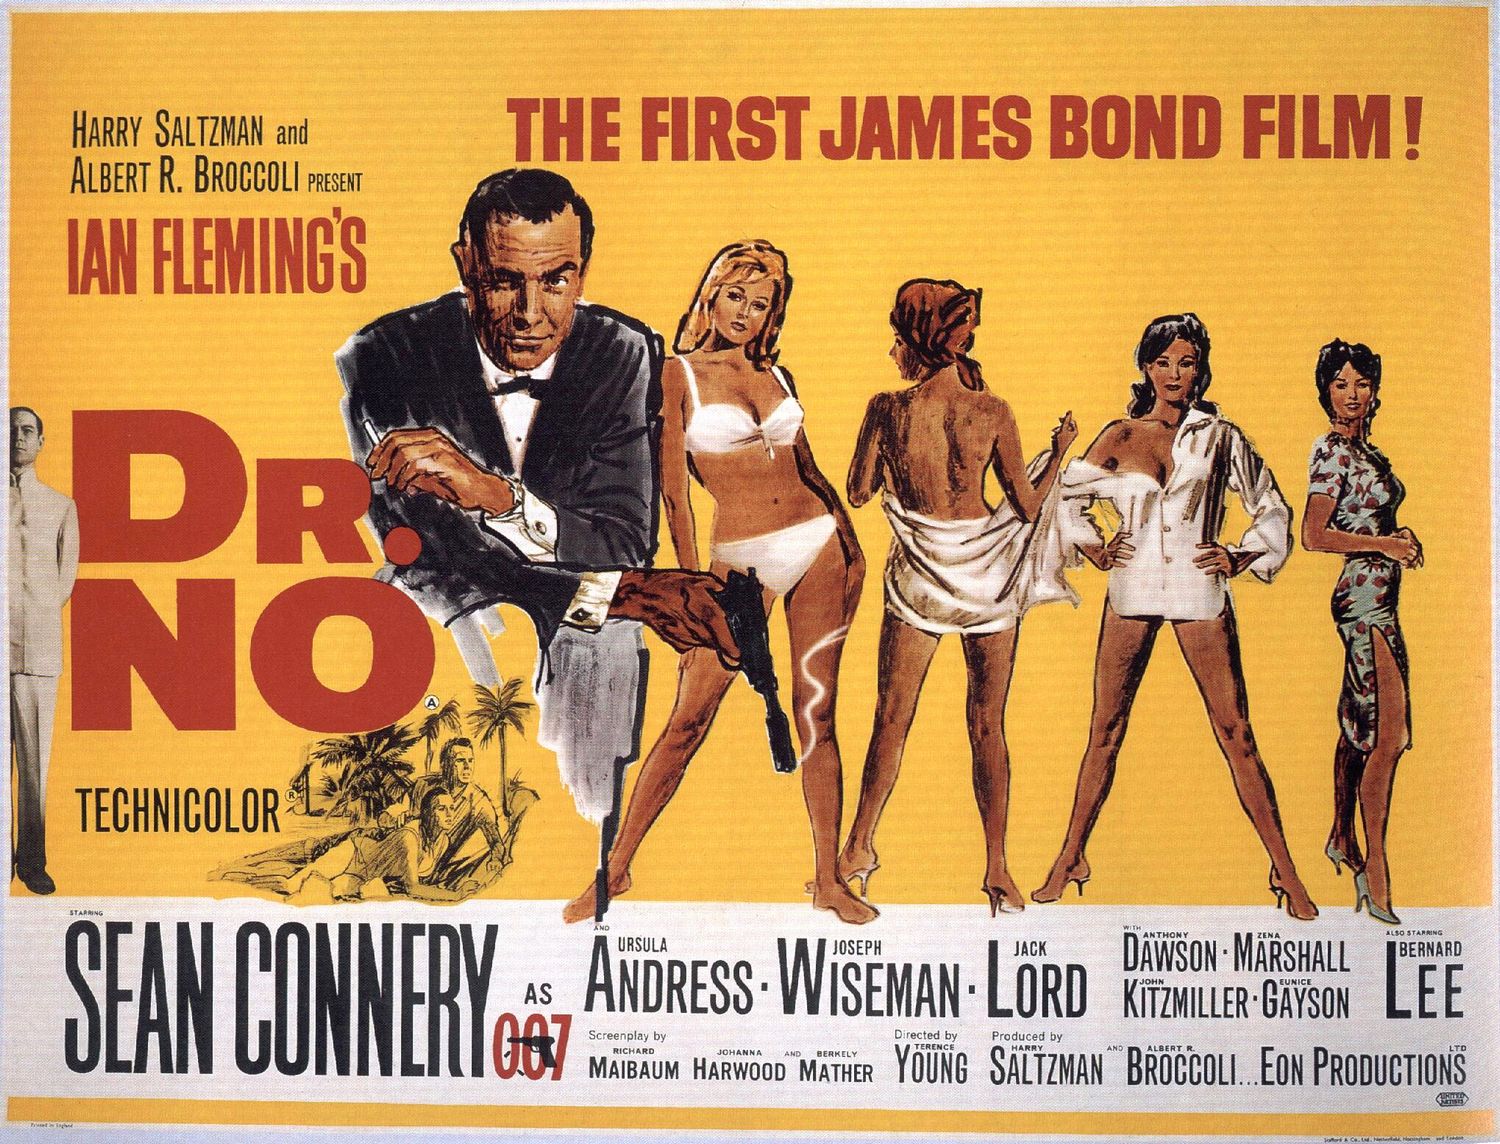 ホラー映画のヴィンテージポスターではなく、ジェームズ・ボンド映画第1作のポスターが美しい。  